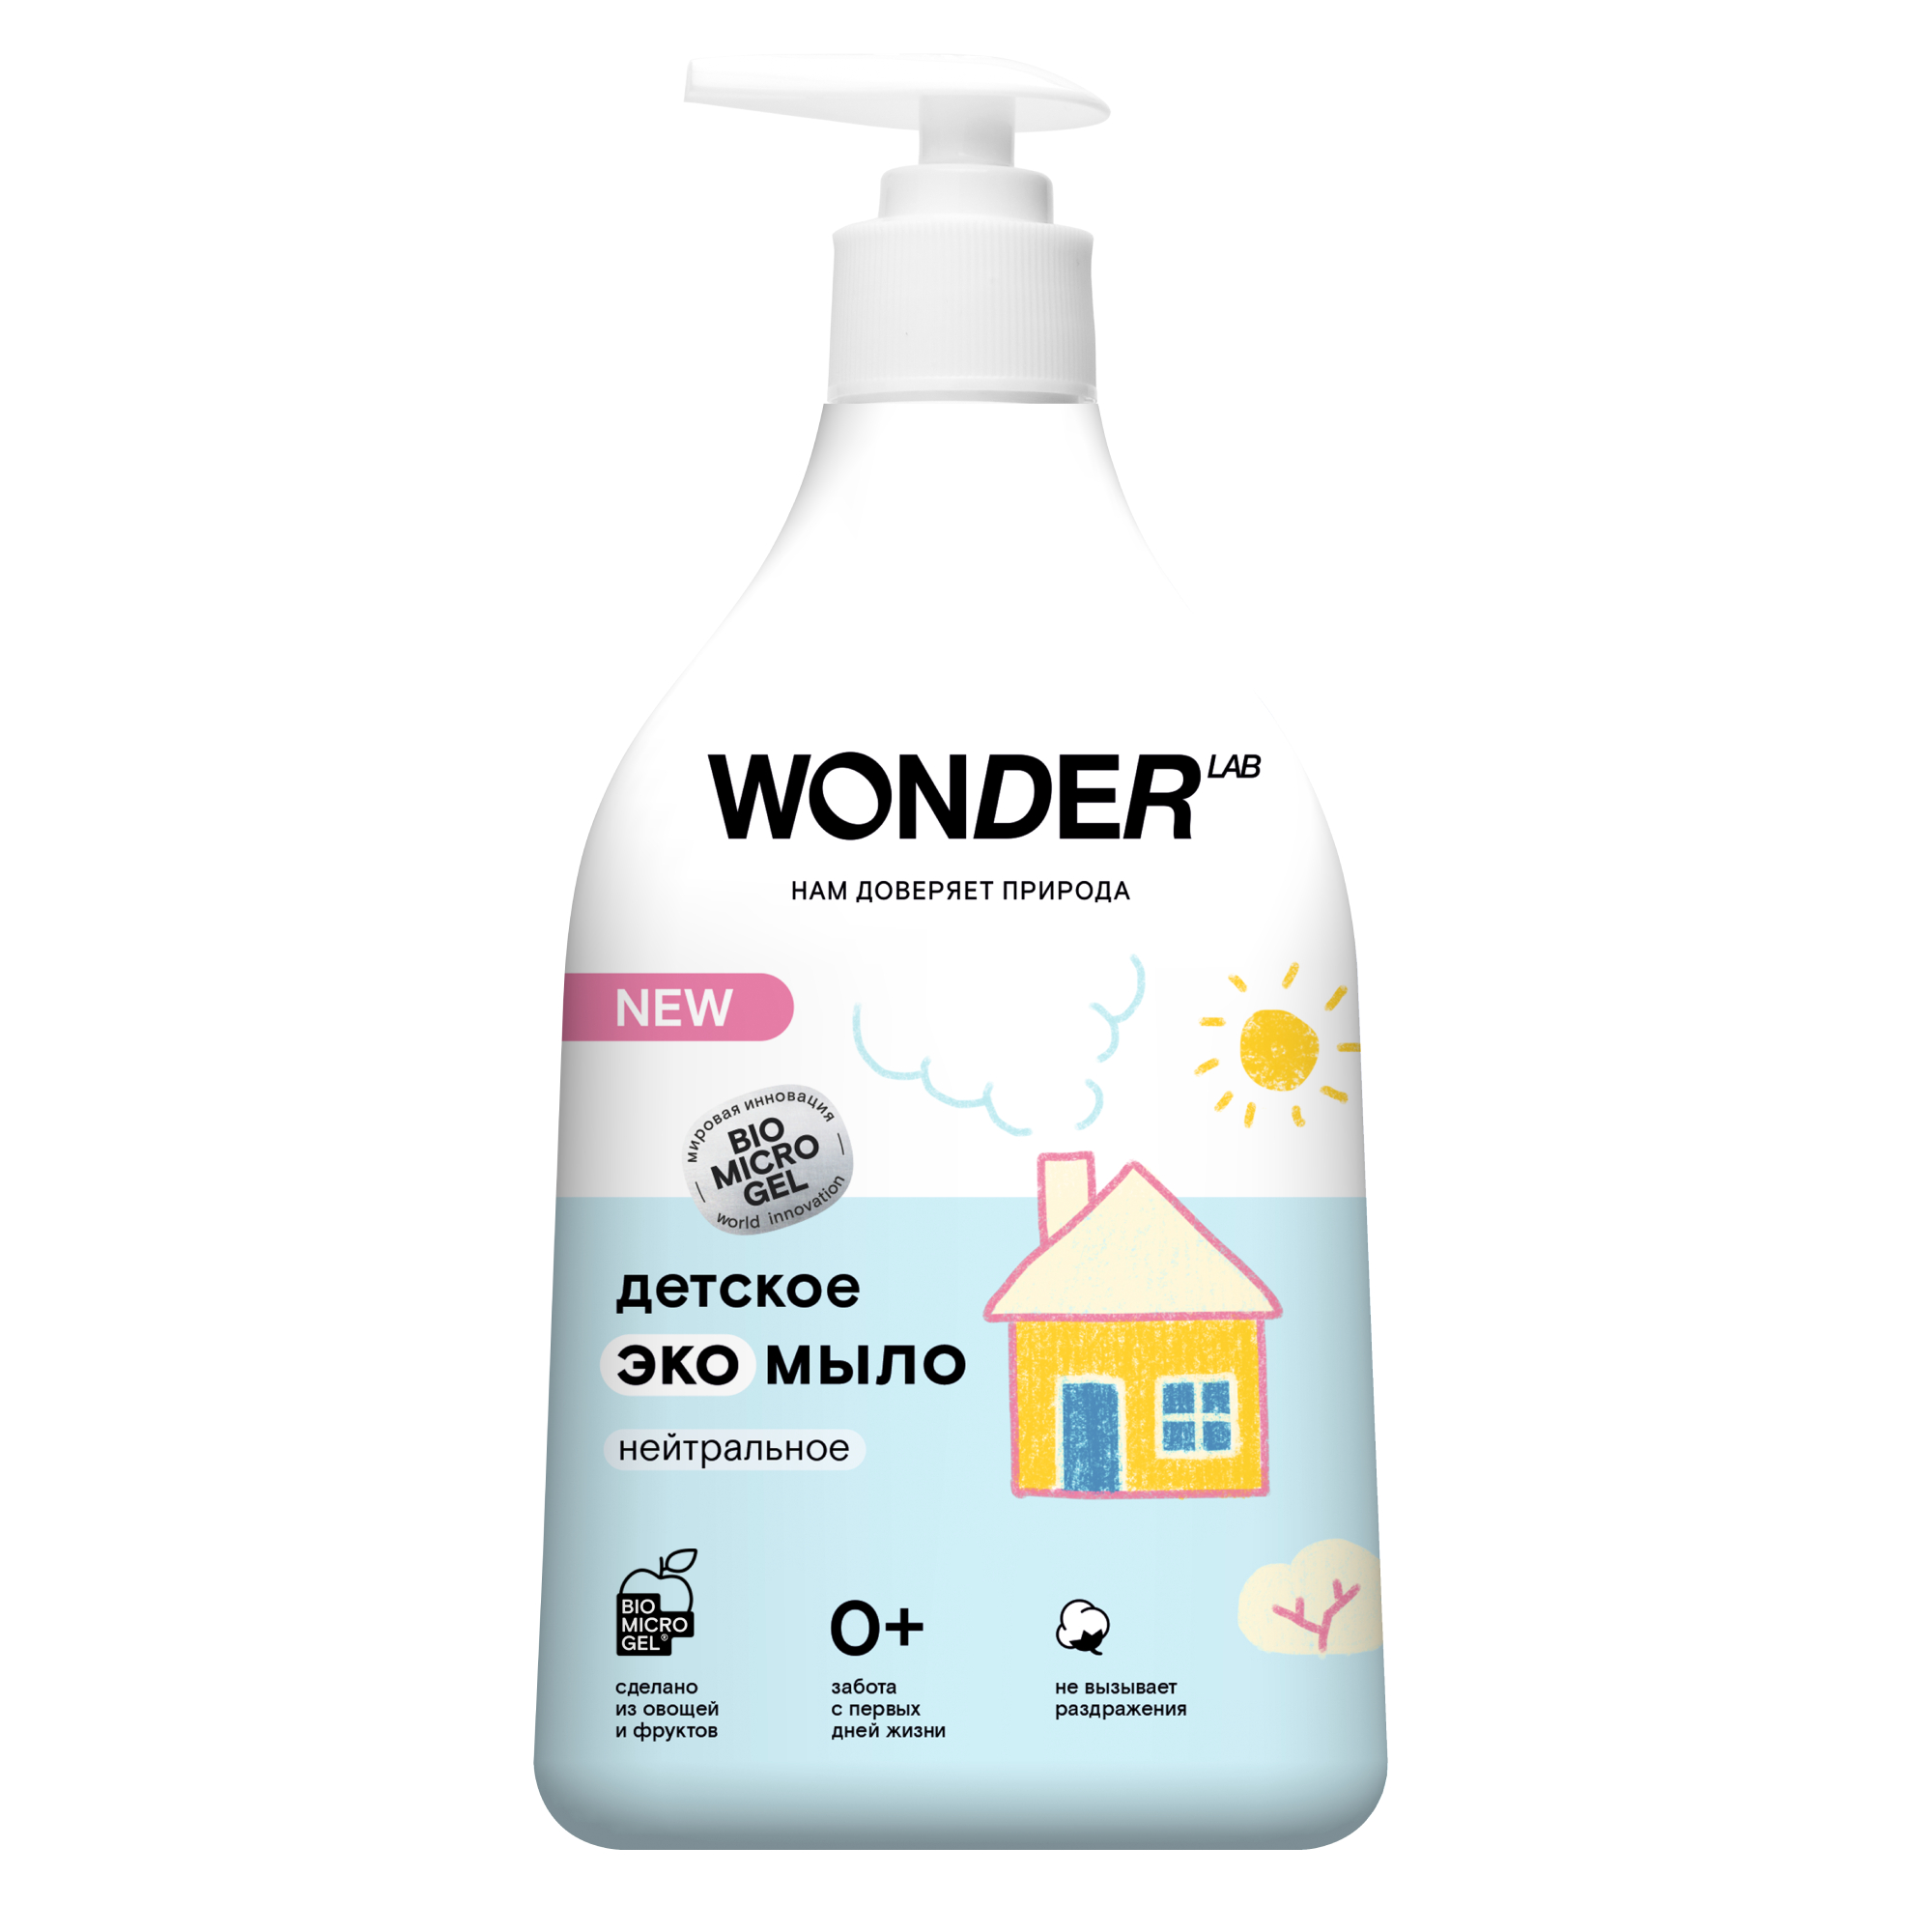 Детское жидкое мыло WONDER LAB, экологичное, без запаха, 540 мл